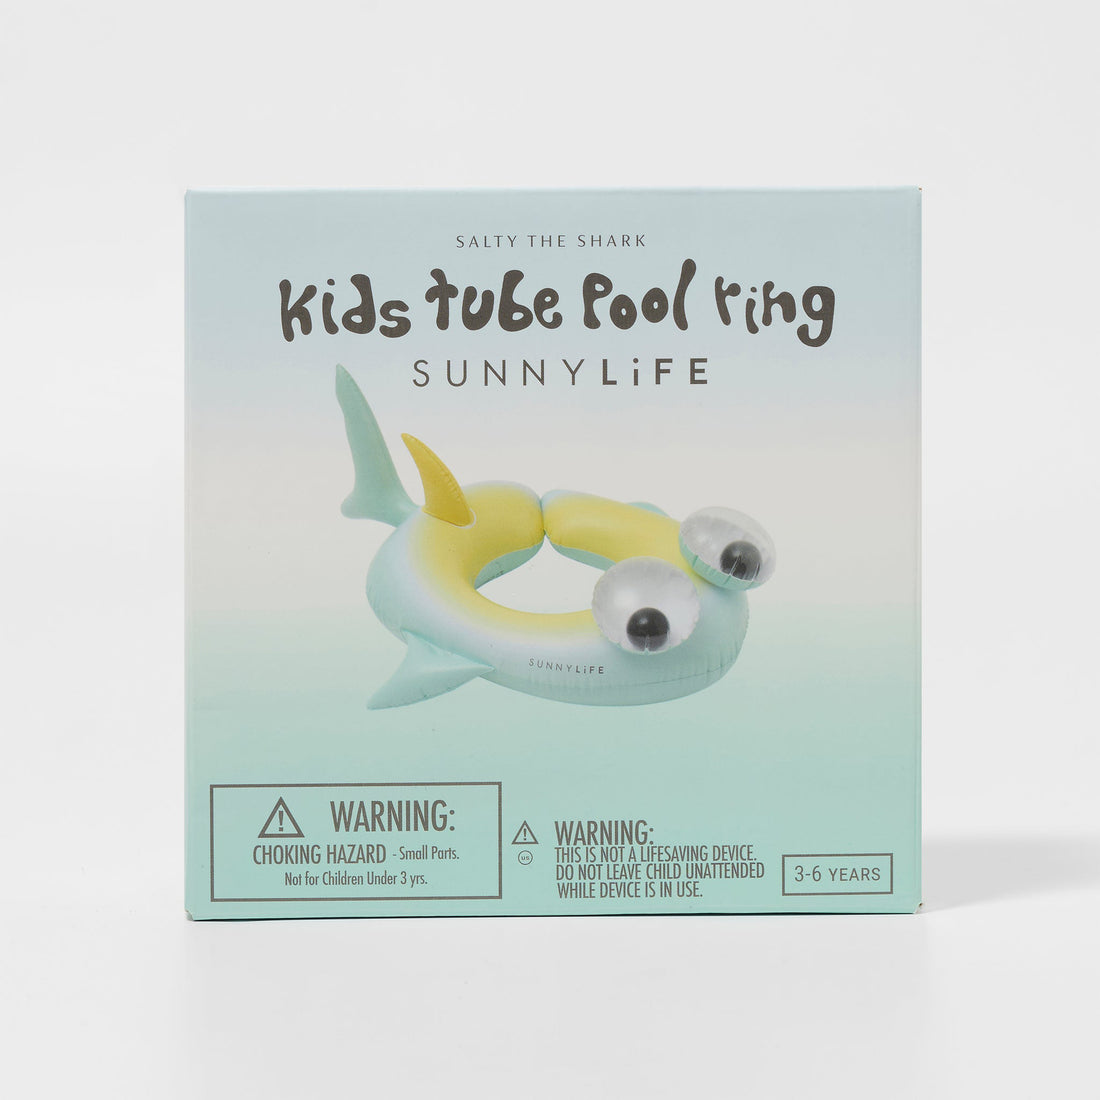 sunnylife-kids-pool-ring-salty-the-shark-multi-sunl-s41prsrk